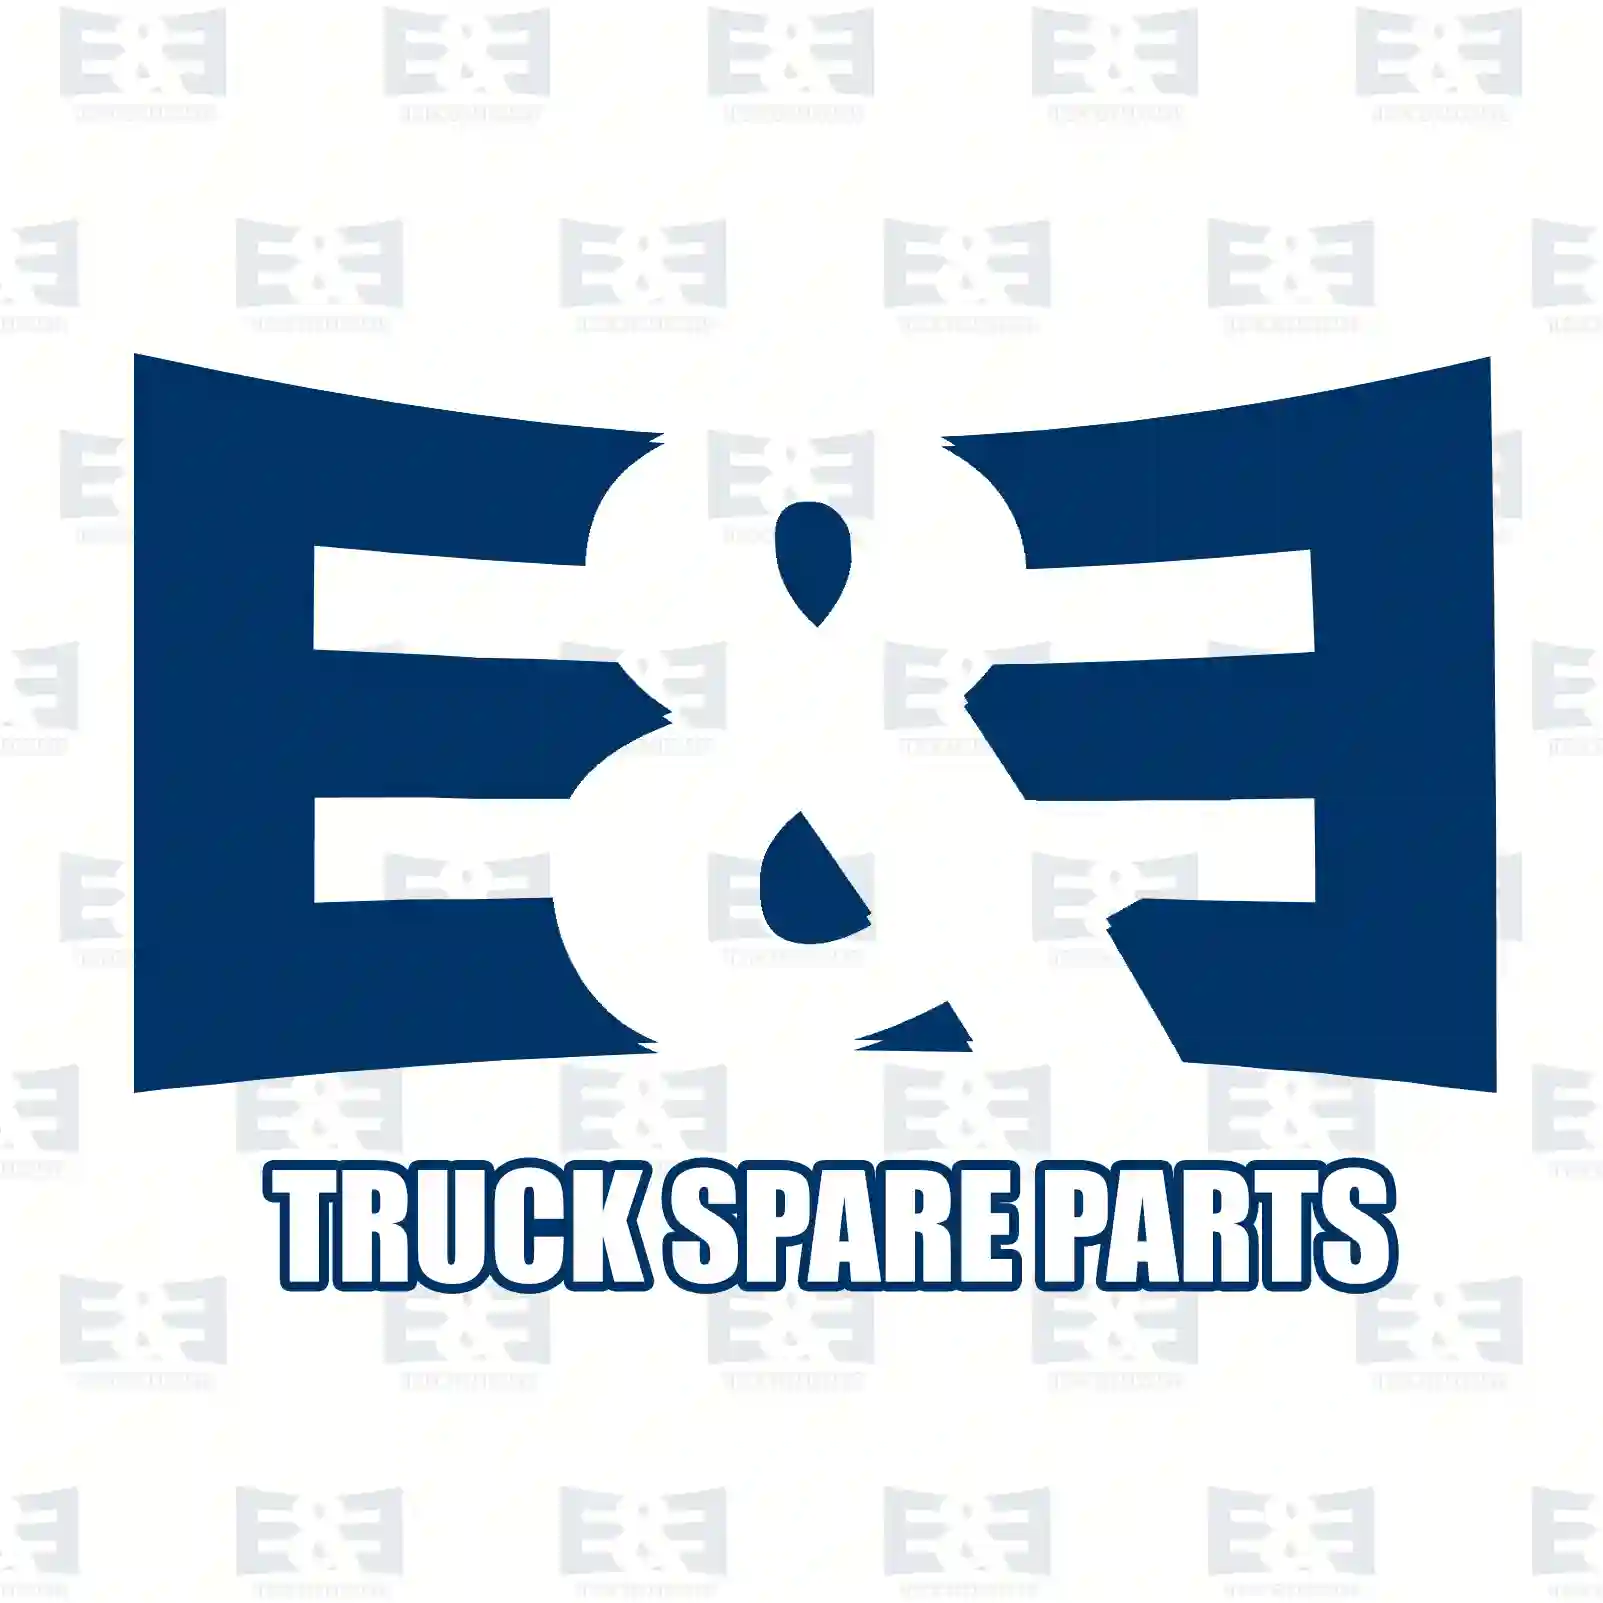 Shock absorber, 2E2270947, 81437016767, , , , ||  2E2270947 E&E Truck Spare Parts | Truck Spare Parts, Auotomotive Spare Parts Shock absorber, 2E2270947, 81437016767, , , , ||  2E2270947 E&E Truck Spare Parts | Truck Spare Parts, Auotomotive Spare Parts